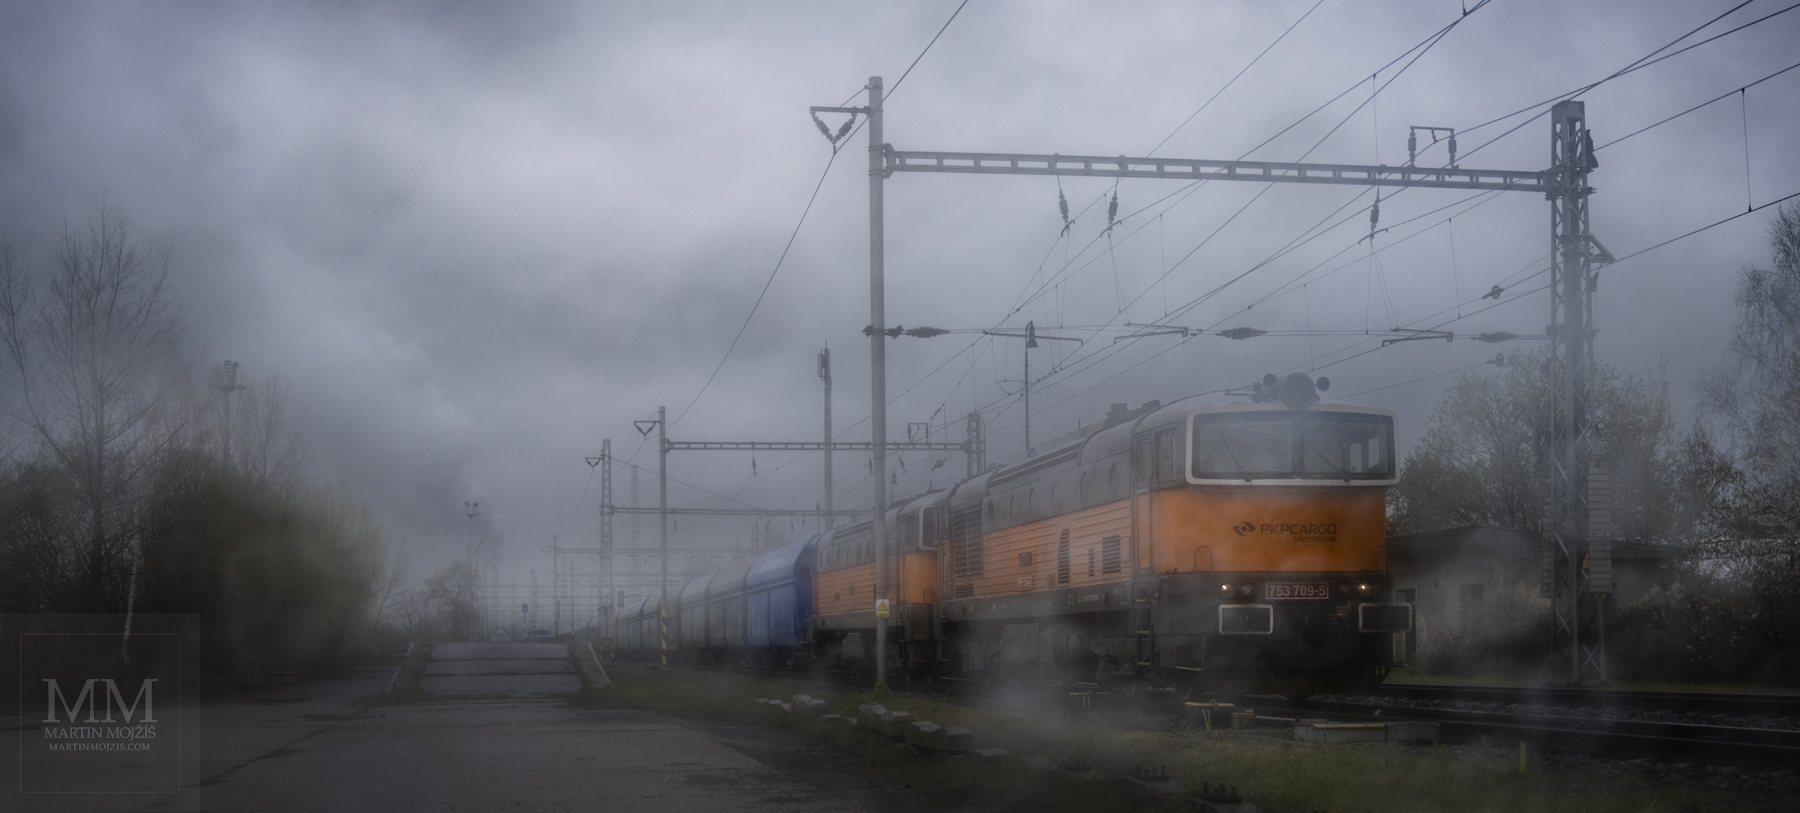 Dvojice oranžových lokomotiv řady 753, v čele 753 709-5, vede nákladní vlak pro přepravu uhlí.